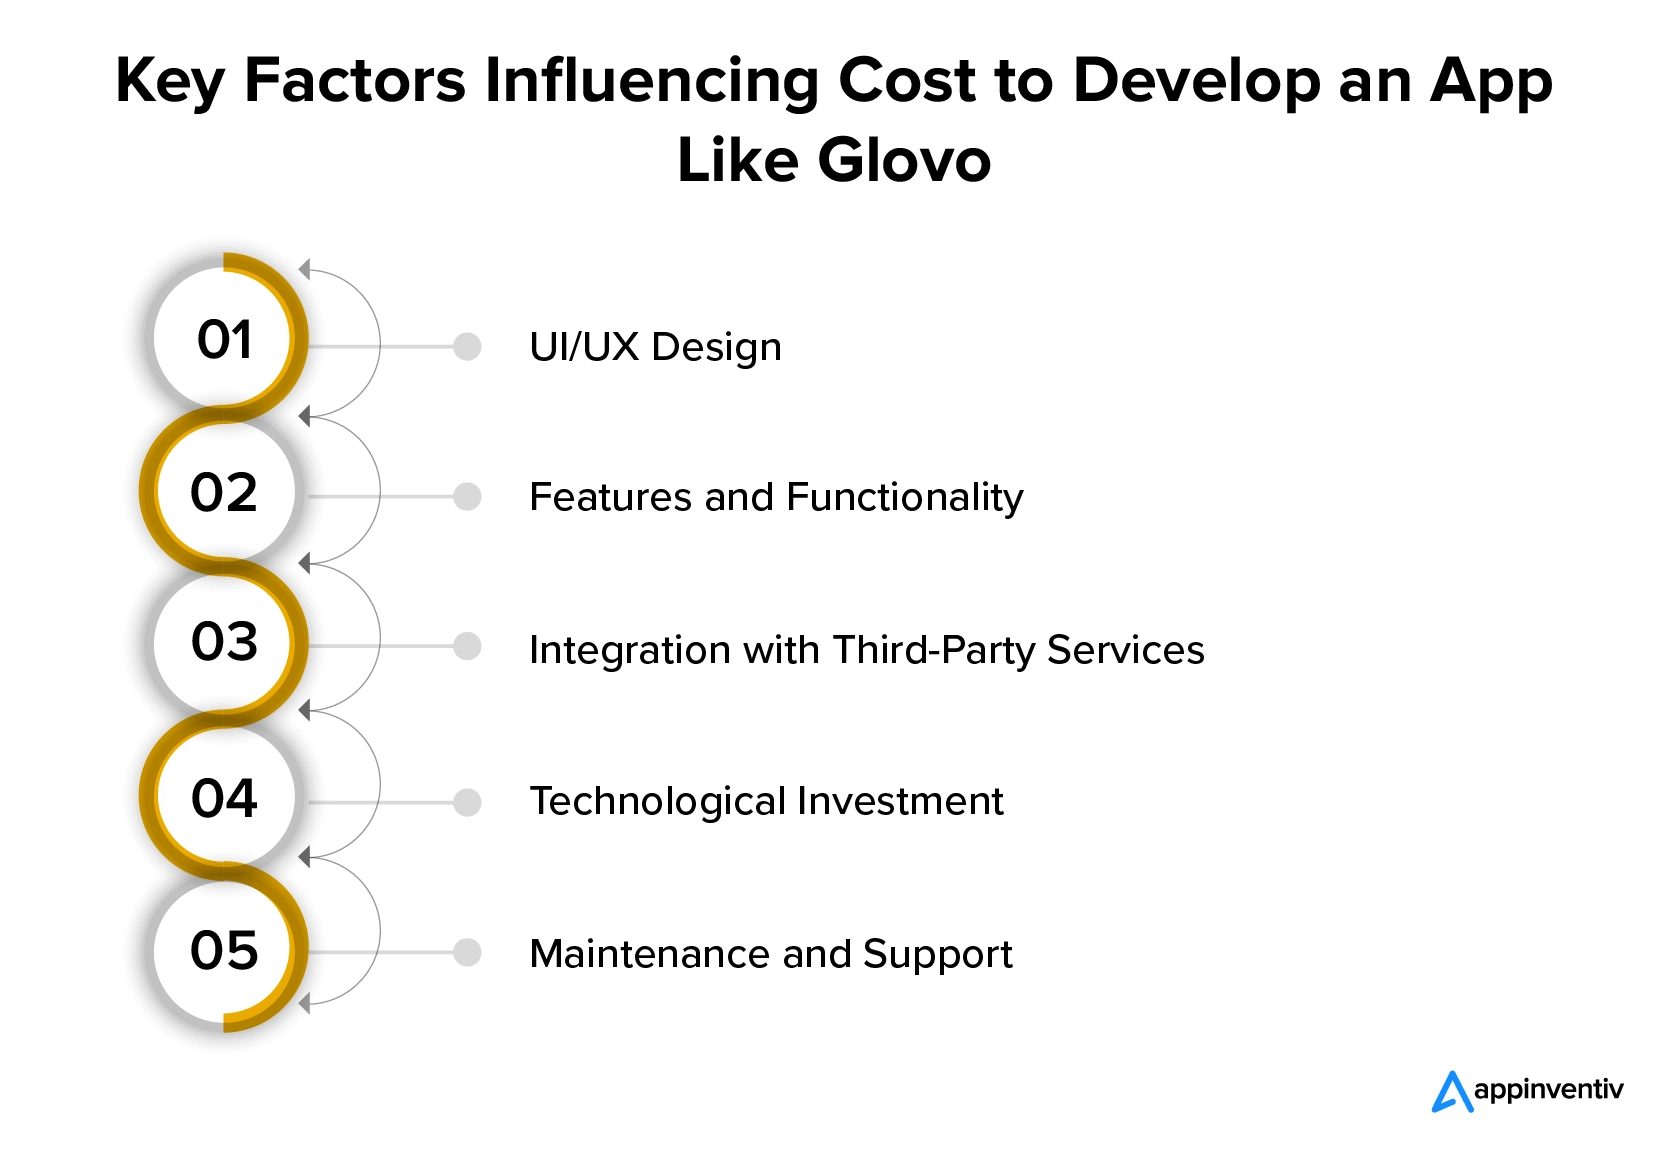 Kostenbeeinflussende Faktoren für die Entwicklung einer App im Glovo-Stil